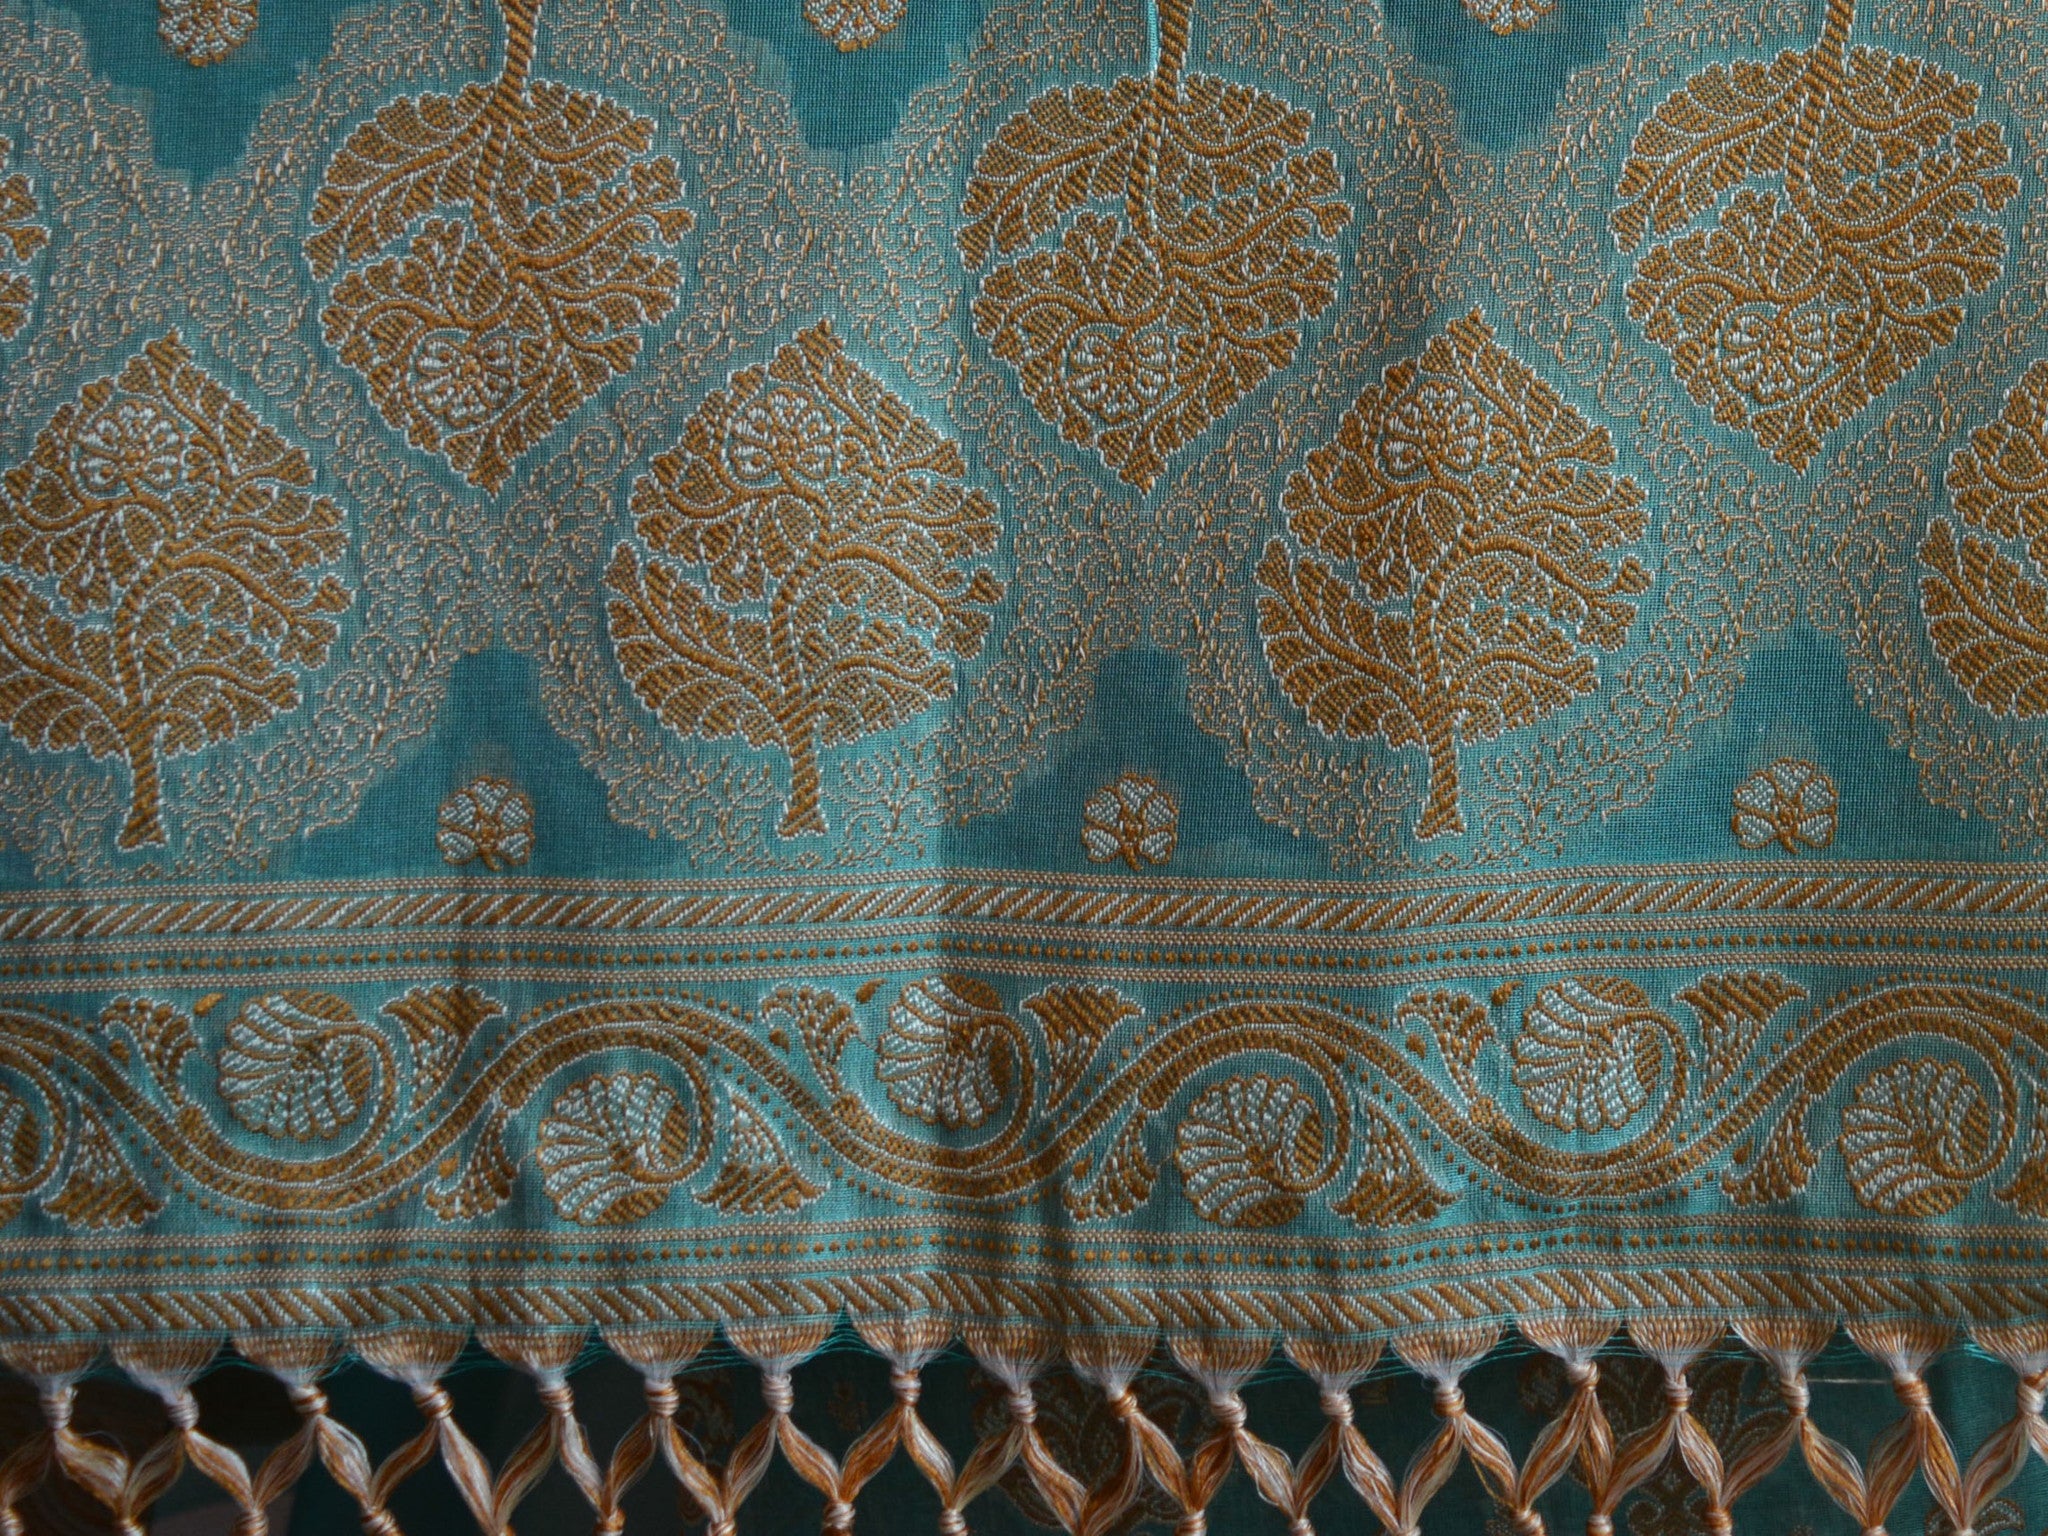 Banarasee/Banarasi Salwar Kameez Cotton Silk Resham Woven Fabric-Sea Green